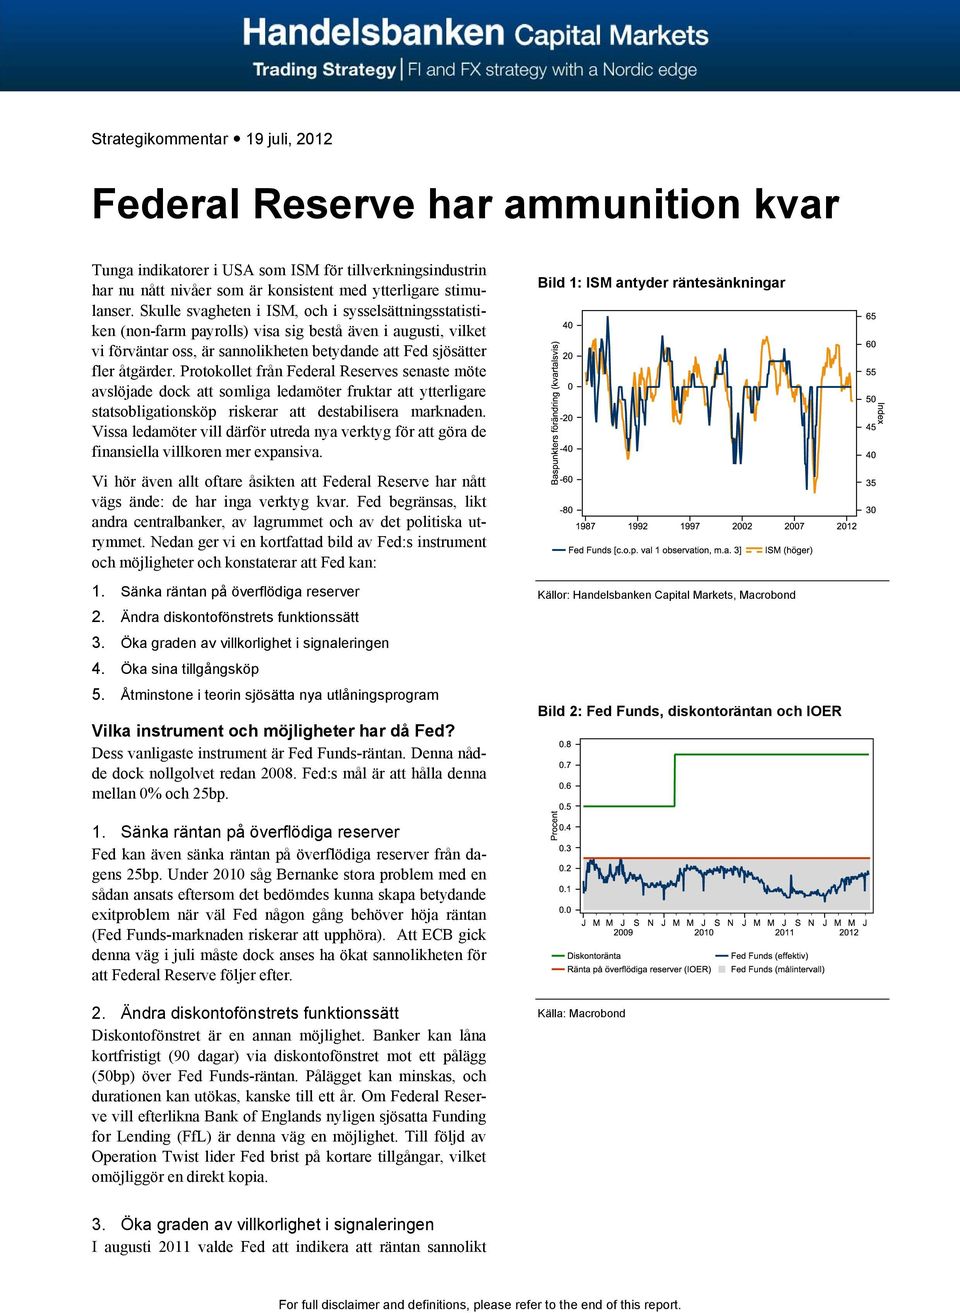 Protokollet från Federal Reserves senaste möte avslöjade dock att somliga ledamöter fruktar att ytterligare statsobligationsköp riskerar att destabilisera marknaden.